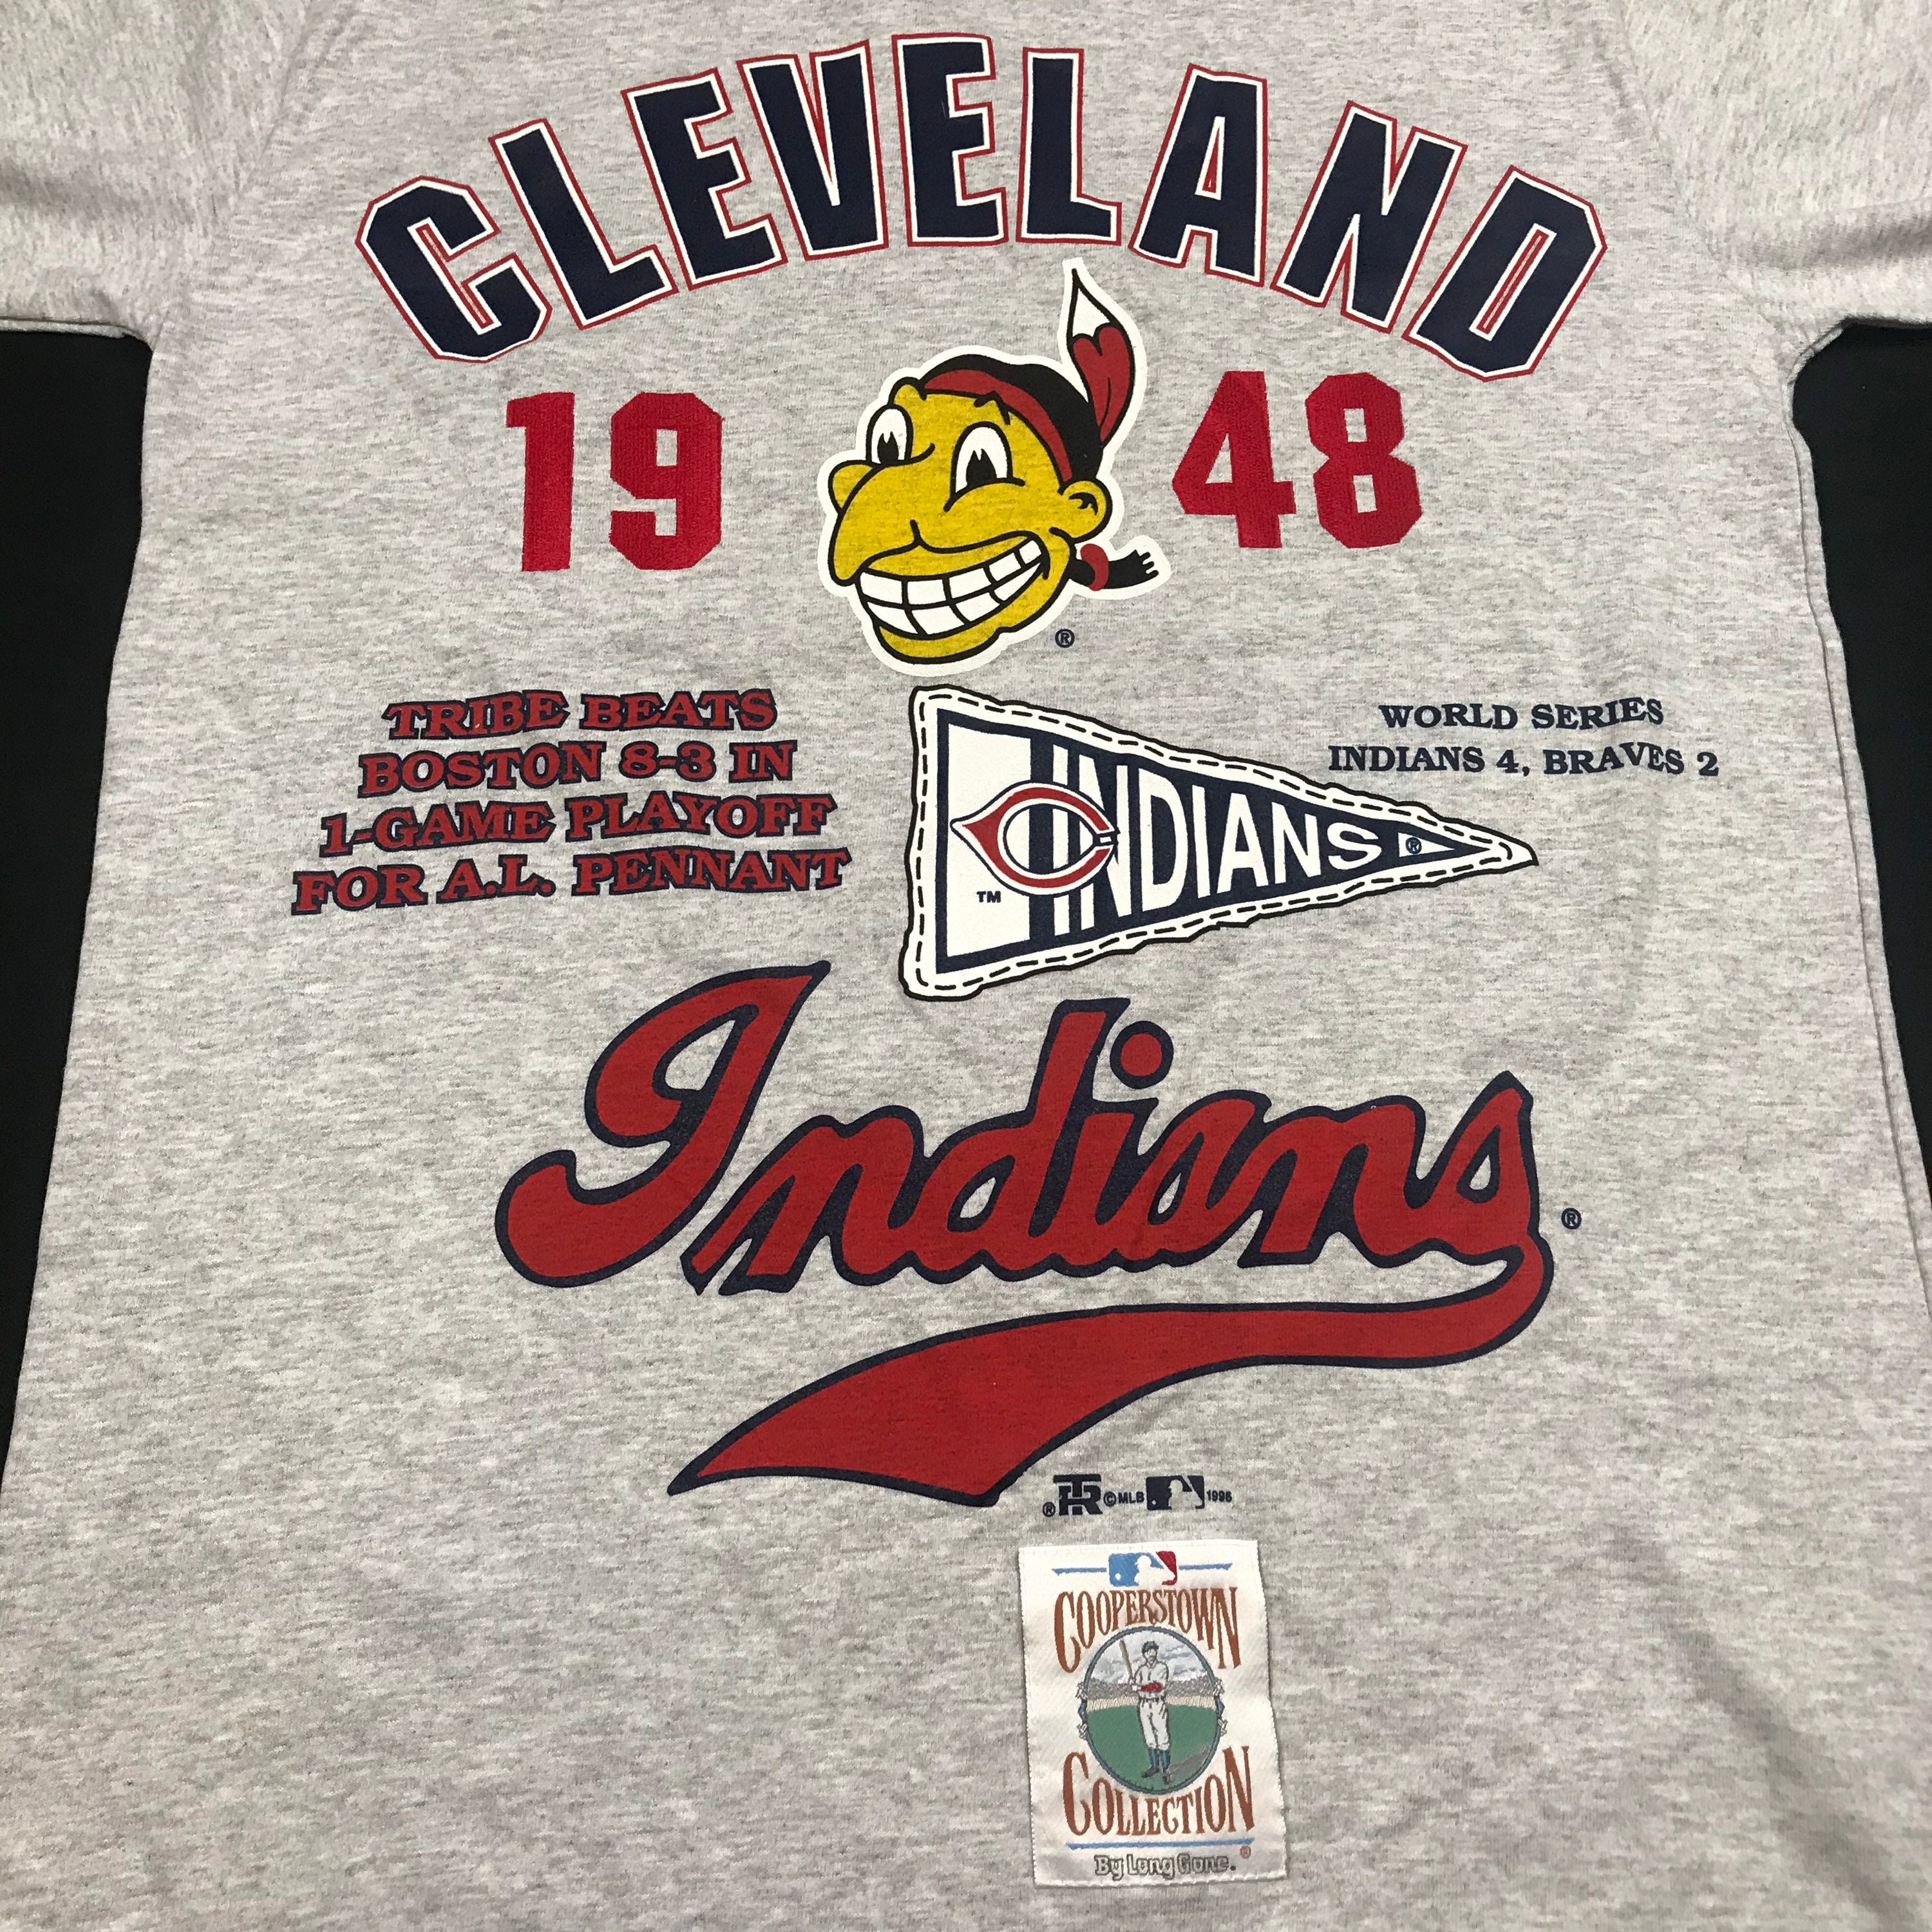 Vintage 90s cleveland Indians basebalk tee shirt vintage | Etsy